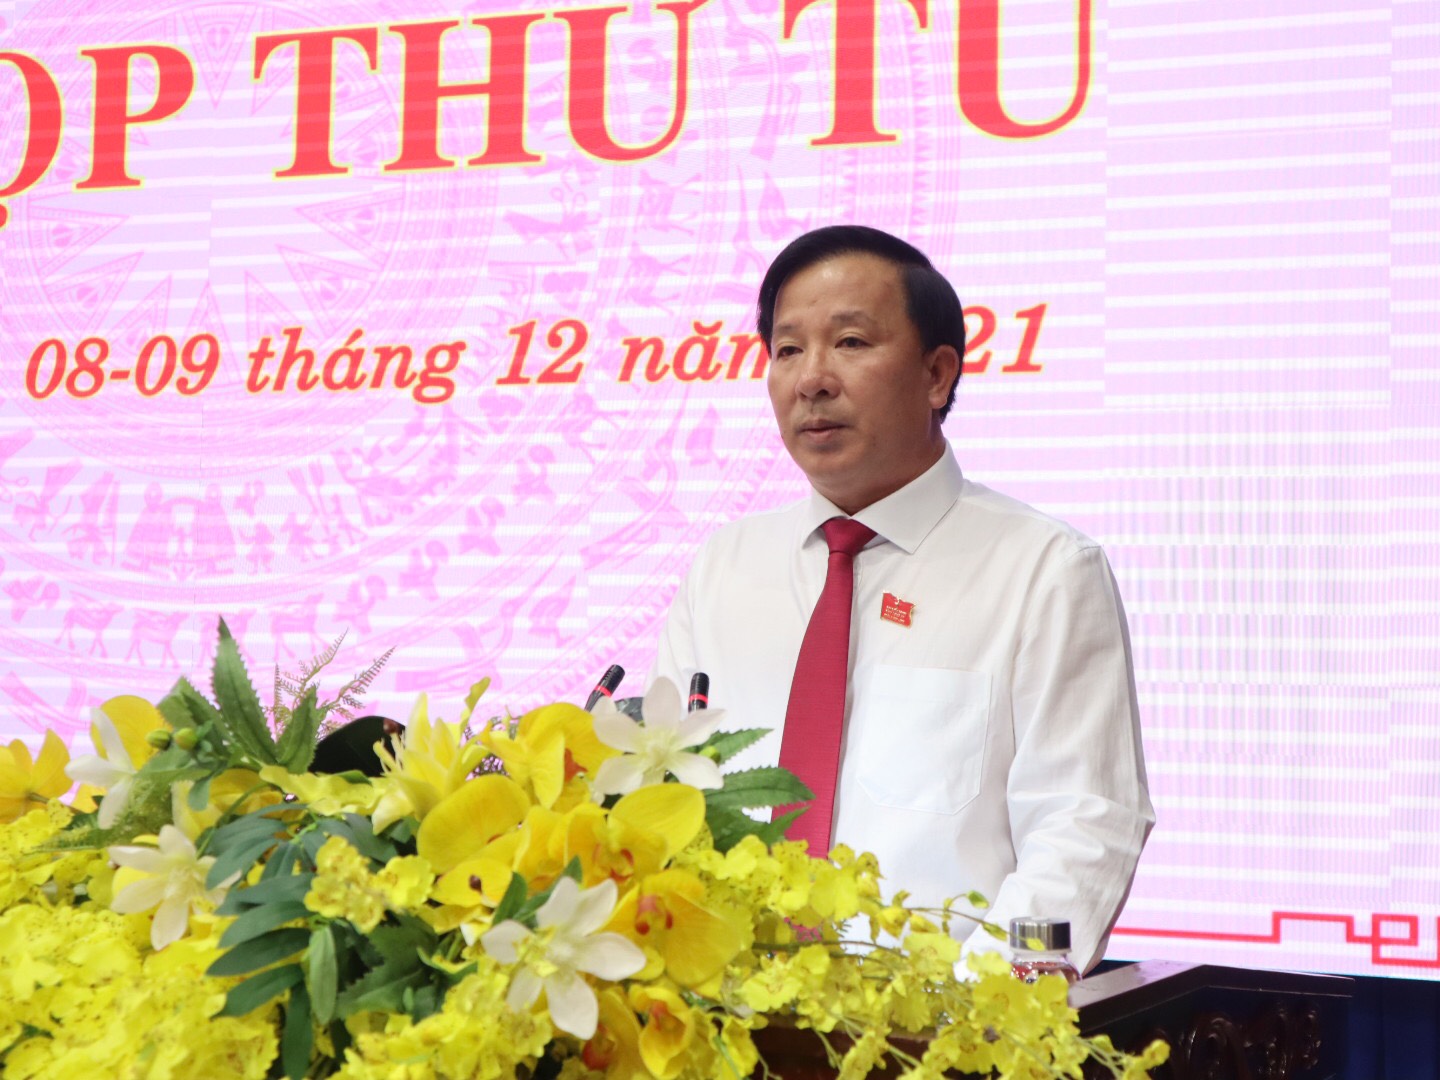 Phó Bí thư Tỉnh ủy, Chủ tịch UBND tỉnh Nguyễn Văn Út trình bày về những giải pháp, định hướng lớn phục hồi và phát triển kinh tế trong trạng thái bình thường mới